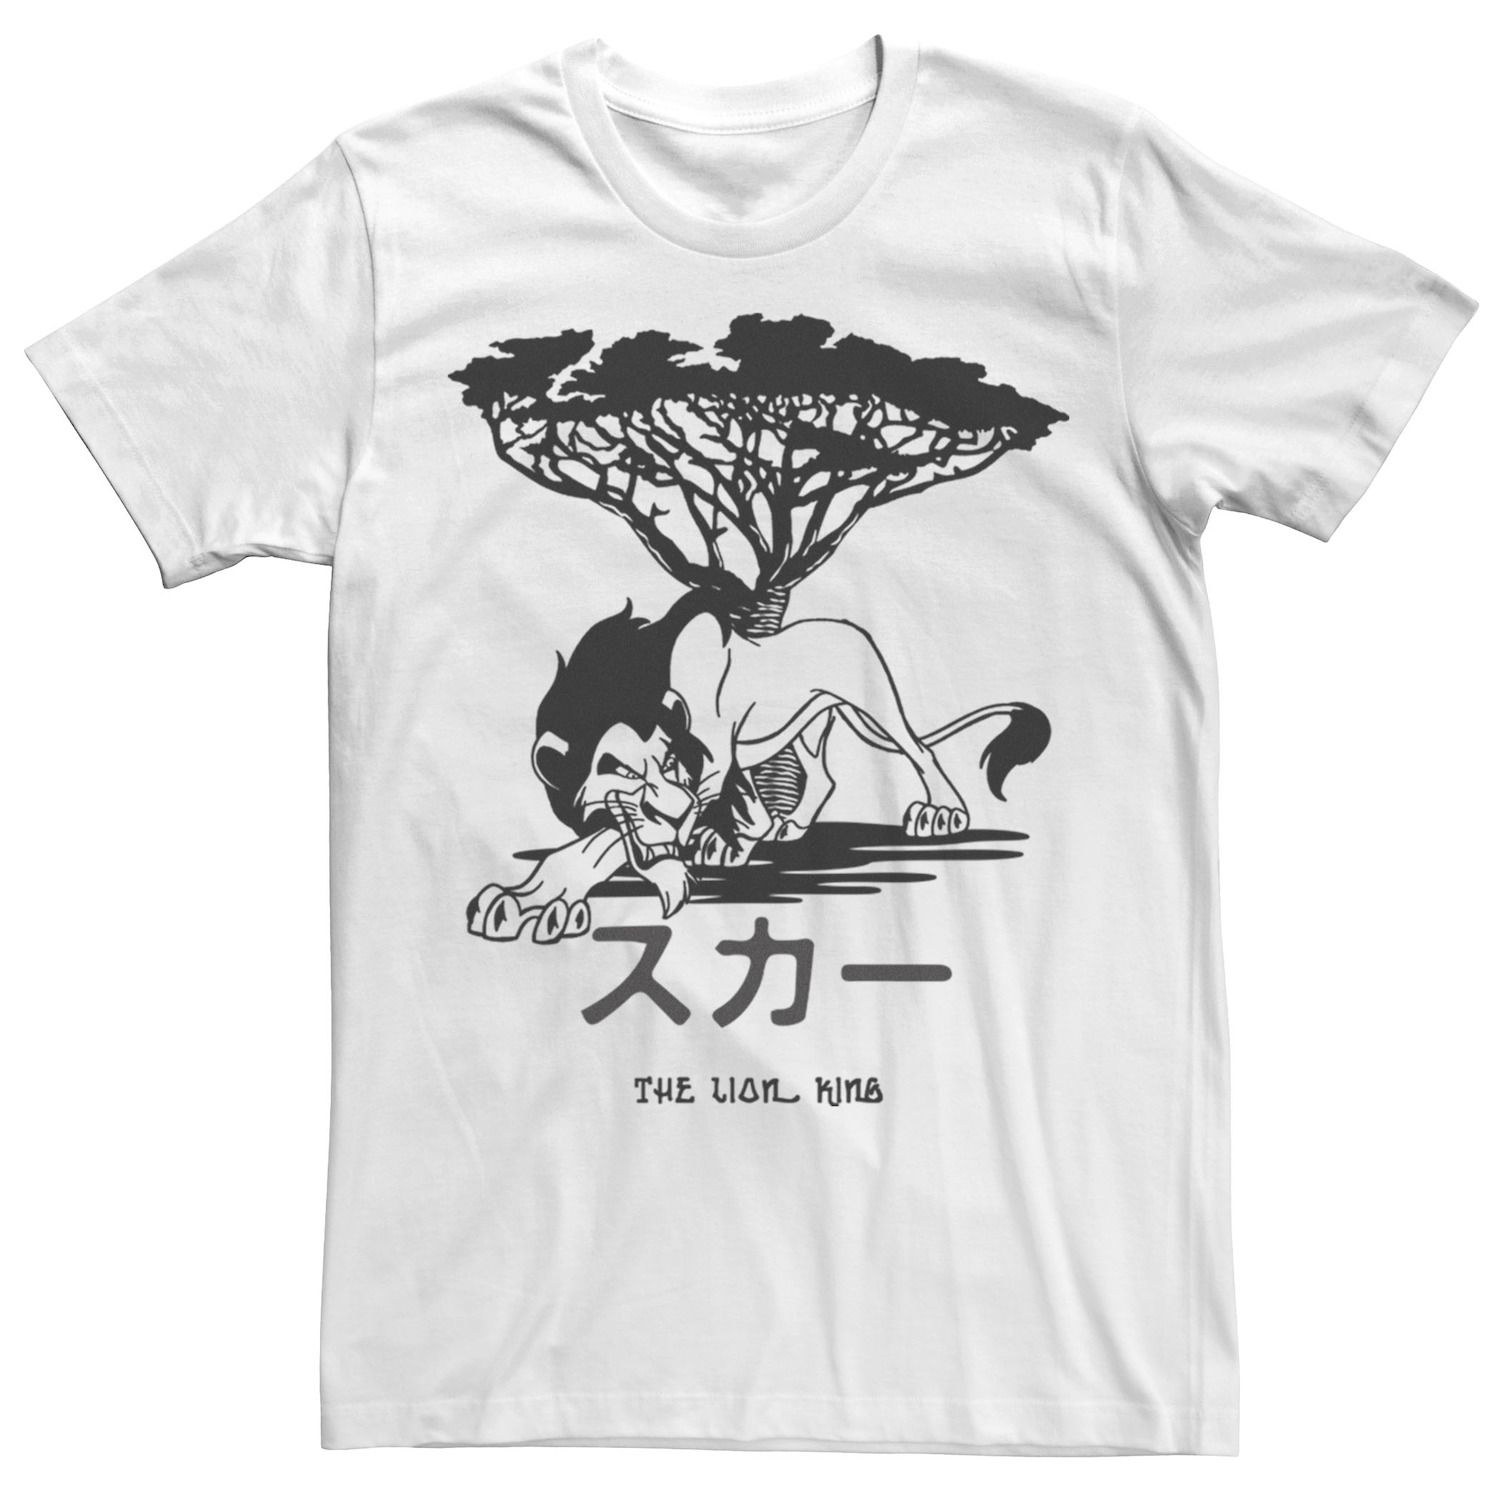 Мужская футболка с логотипом The Lion King Scar Kanji Sketch Disney футболка lion king scar unleashed disney черный